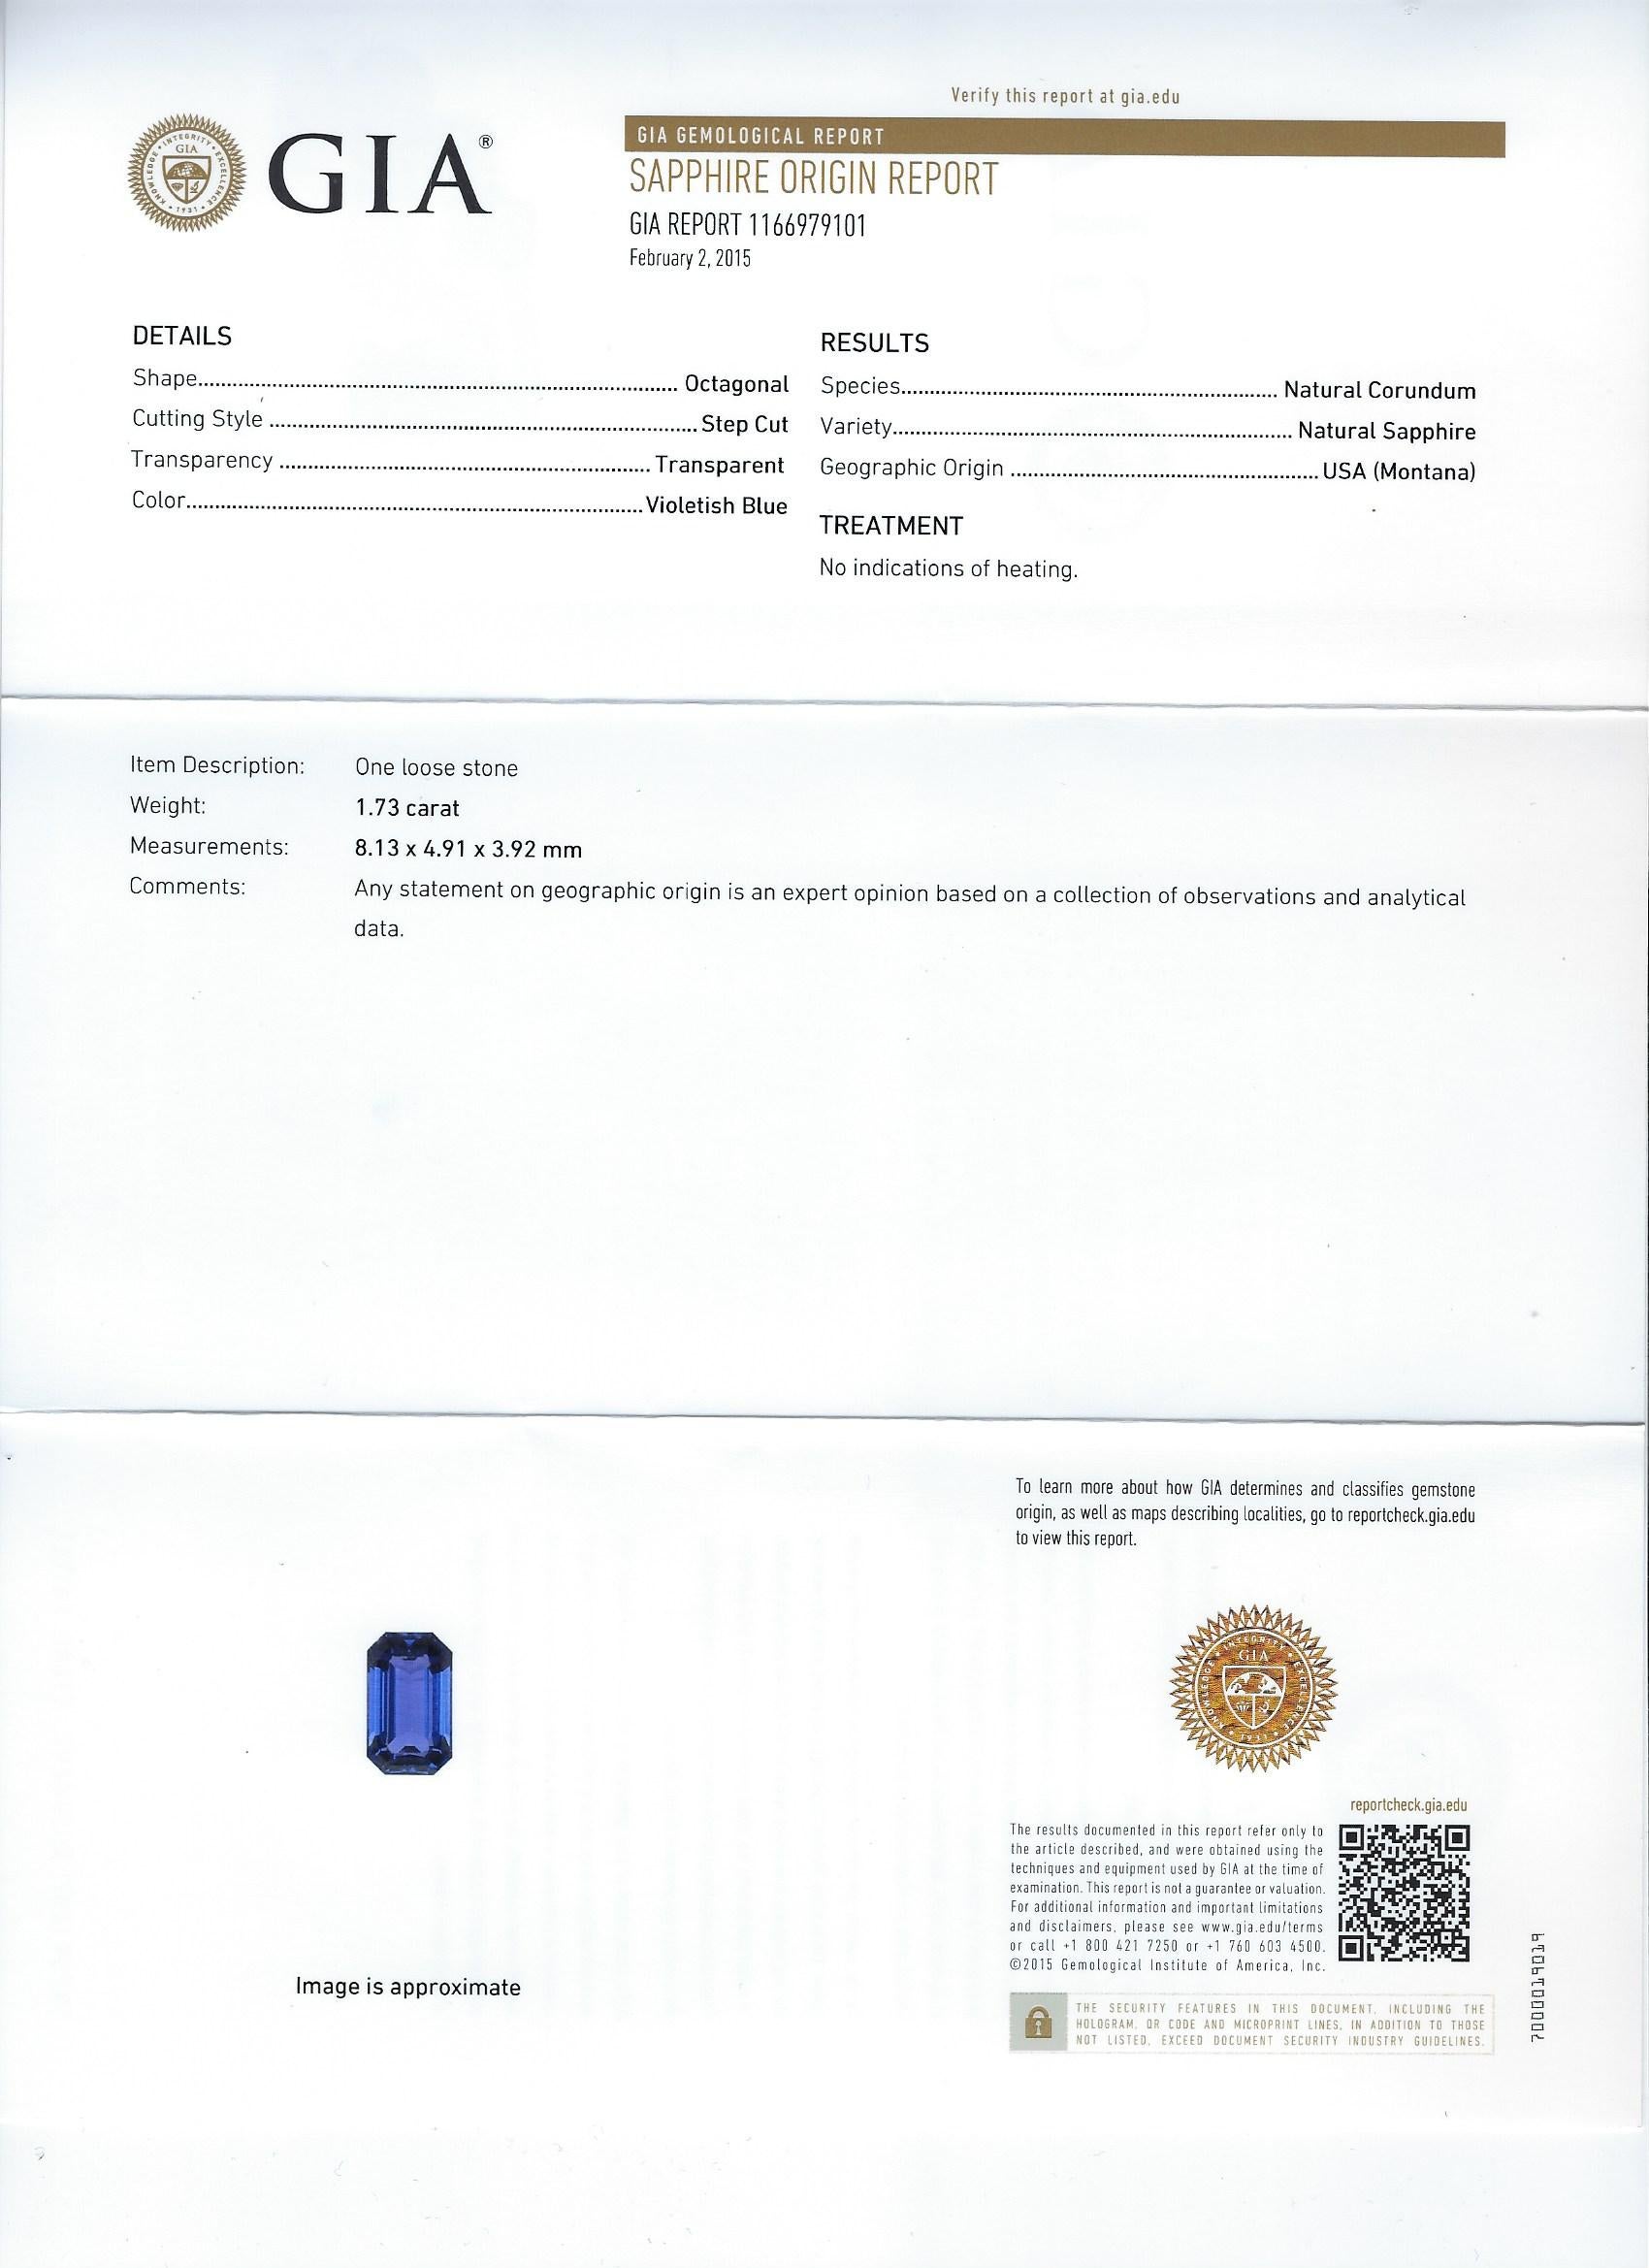 Cette bague de fiançailles en saphir et baguette présente un saphir central émeraude de 1,73 carat, certifié par le GIA, d'un bleu riche [avec des nuances de violet], fixé dans une monture à 4 griffes - naturellement extrait de la terre sans aucune